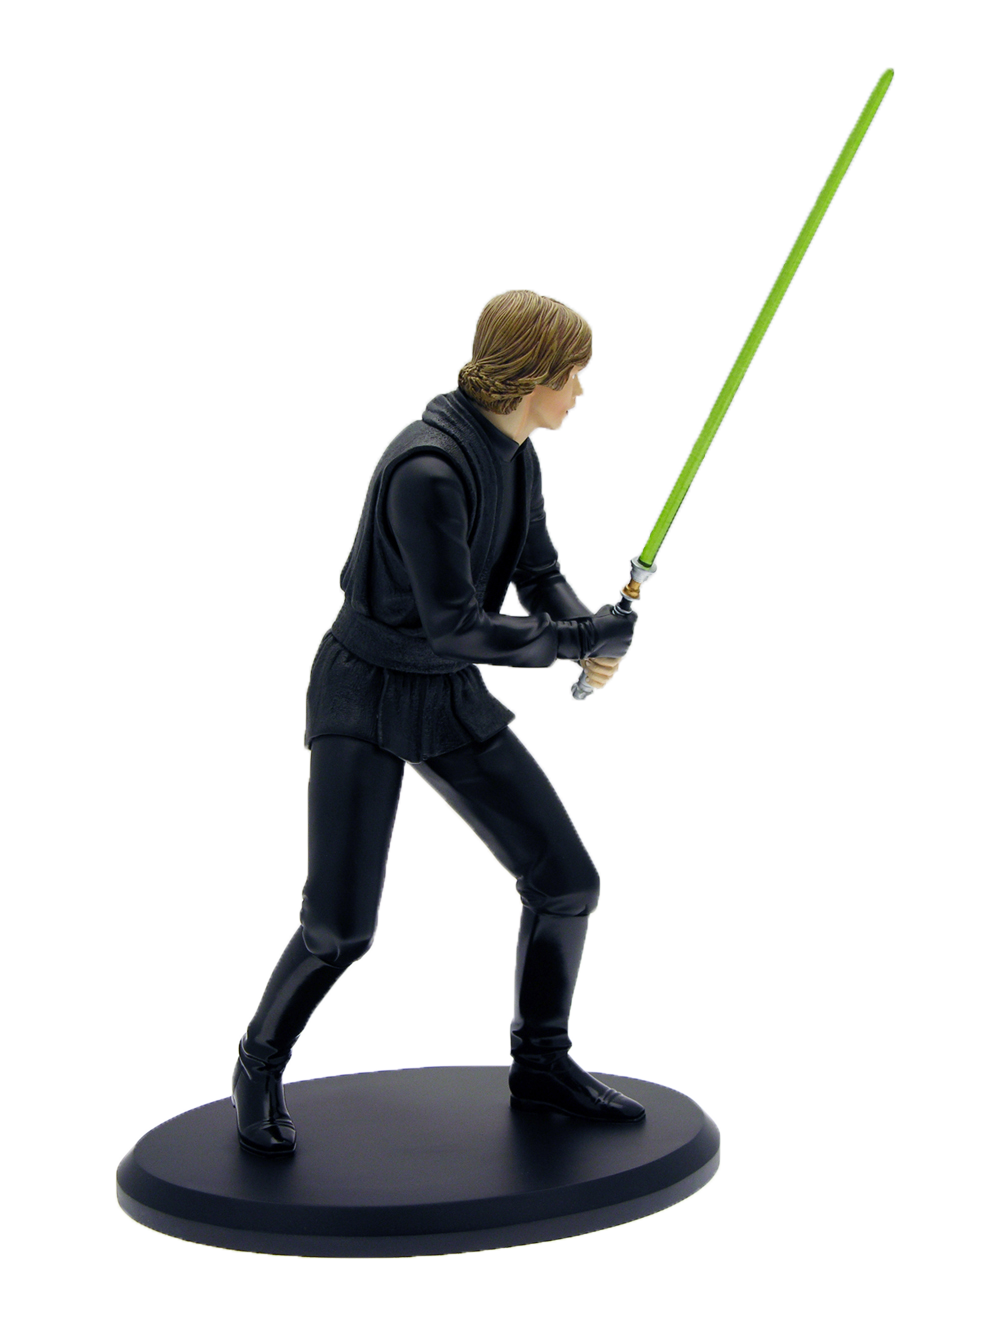 STAR WARS – Luke Jedi Knight – Statue 37 cm, limitierte Auflage 1500 Exemplare.